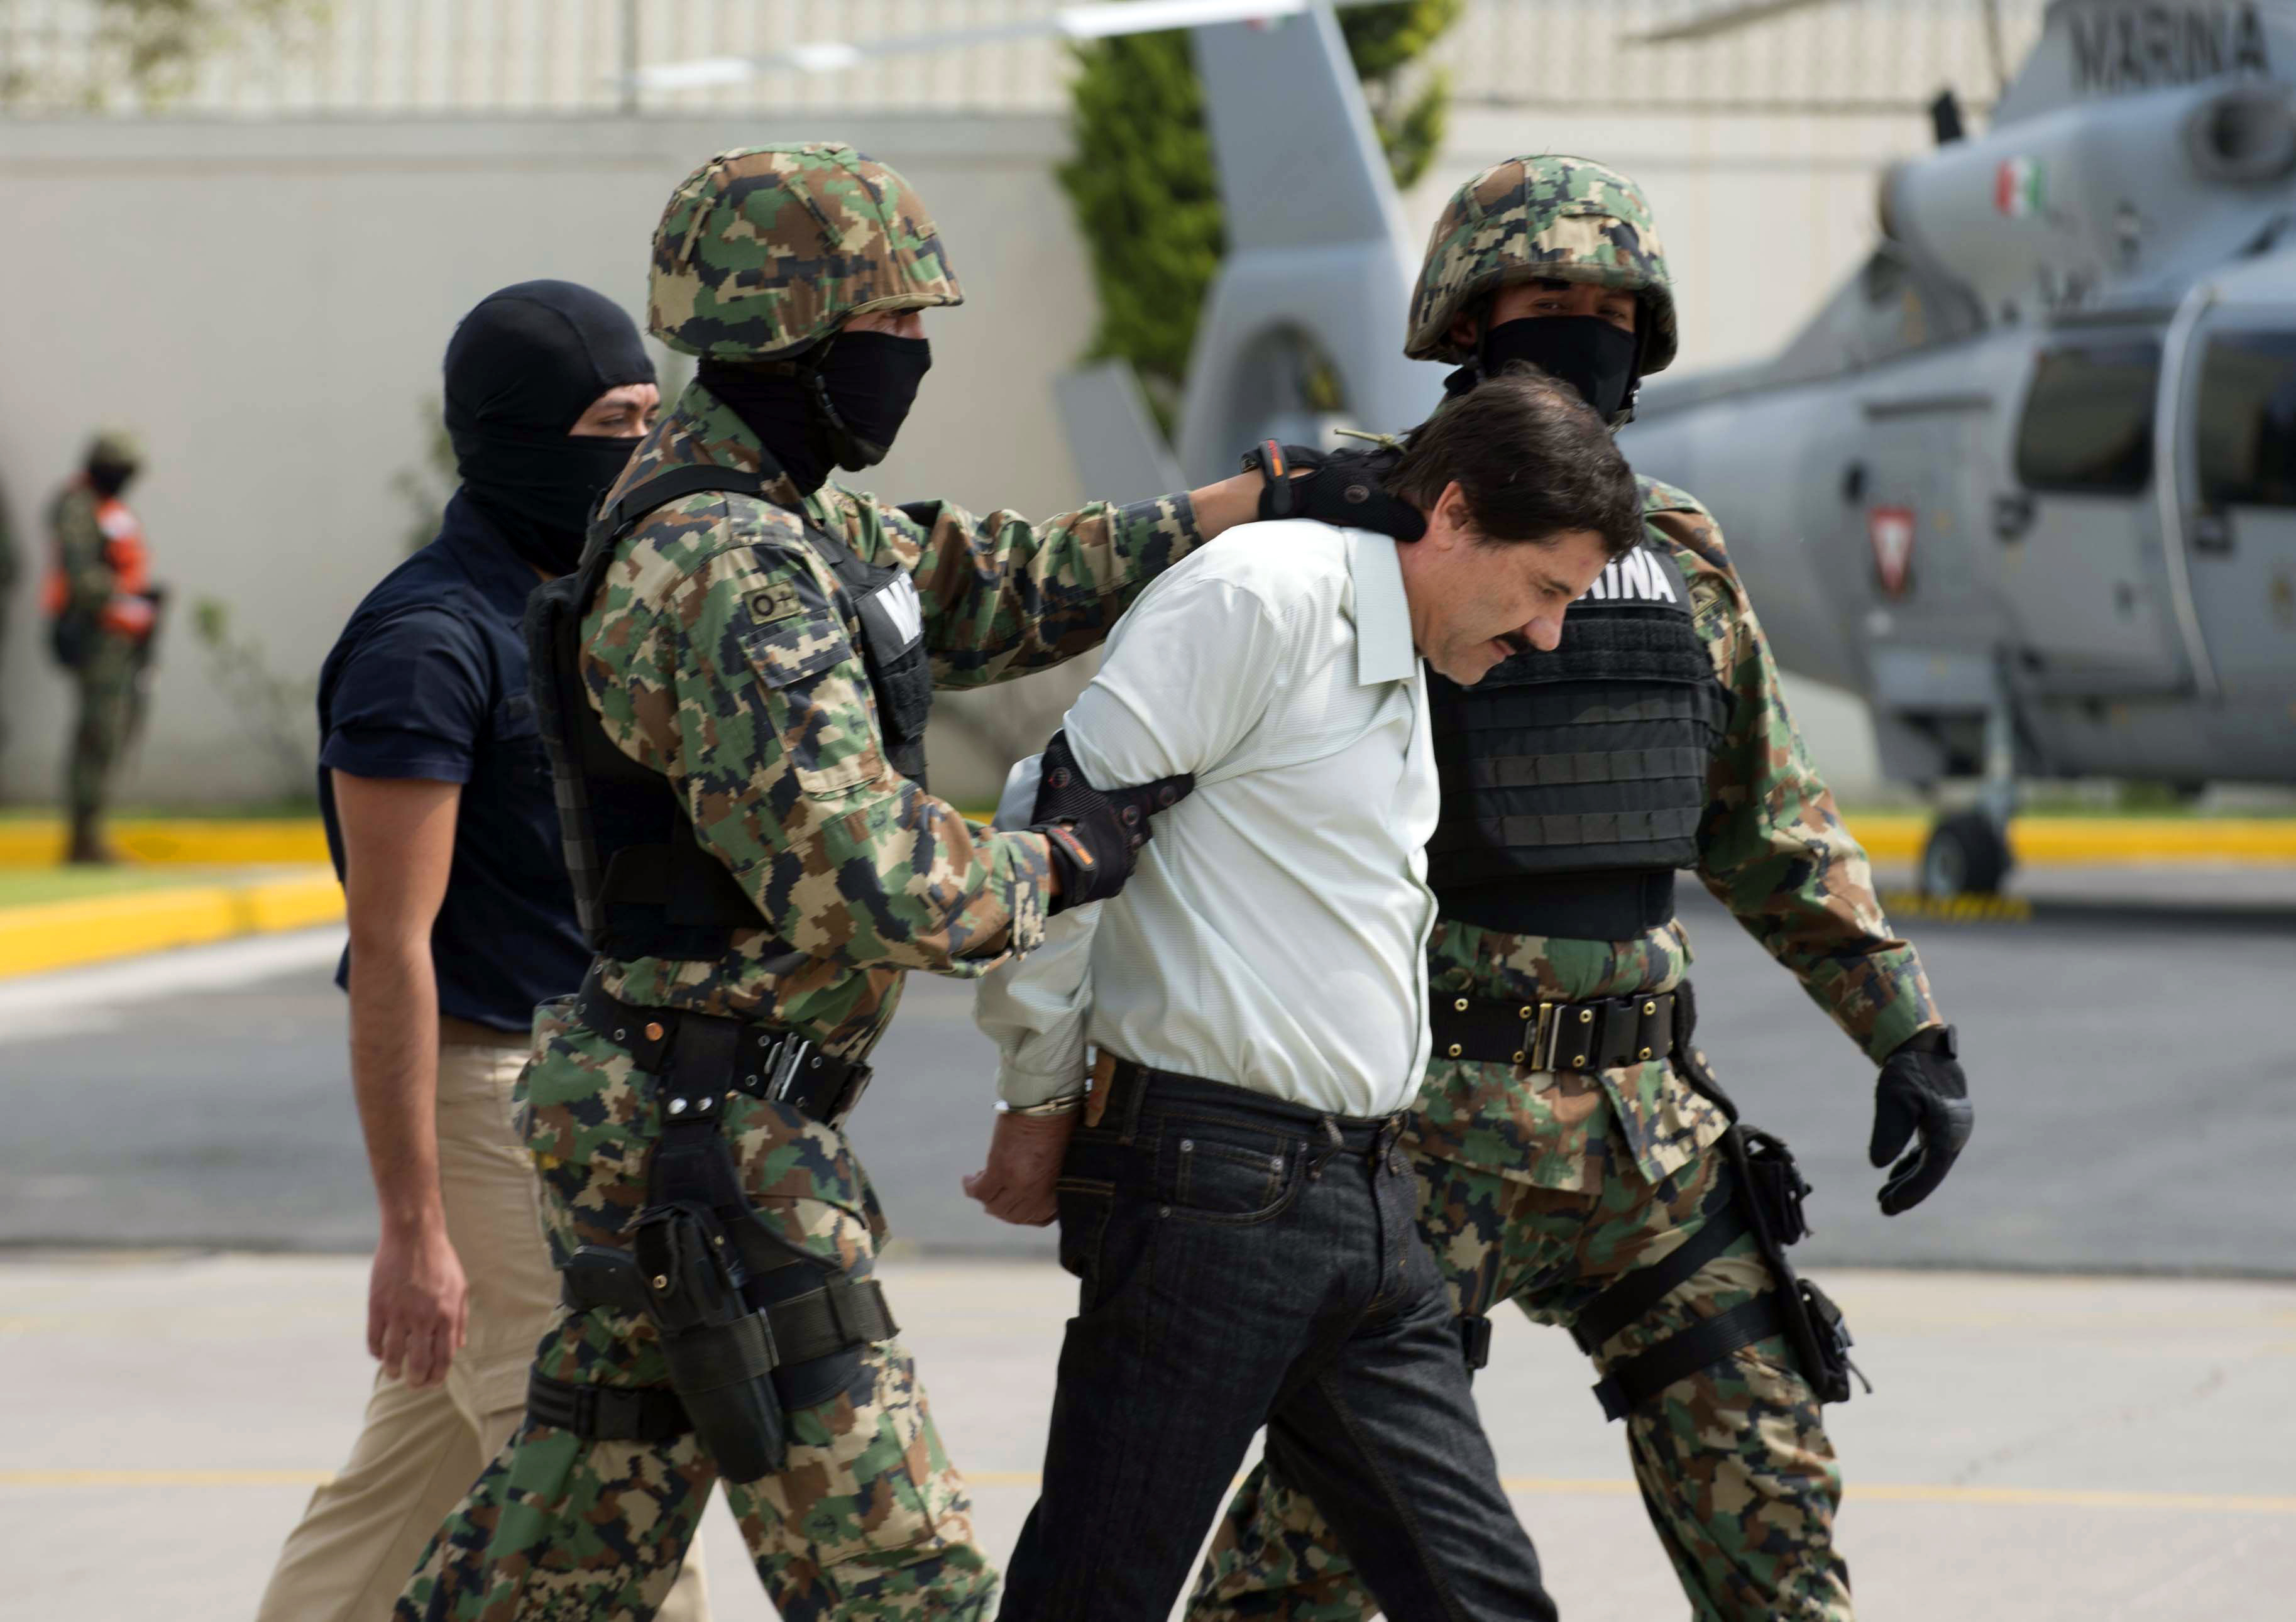 El Chapo&#x27;s arrest in 2014